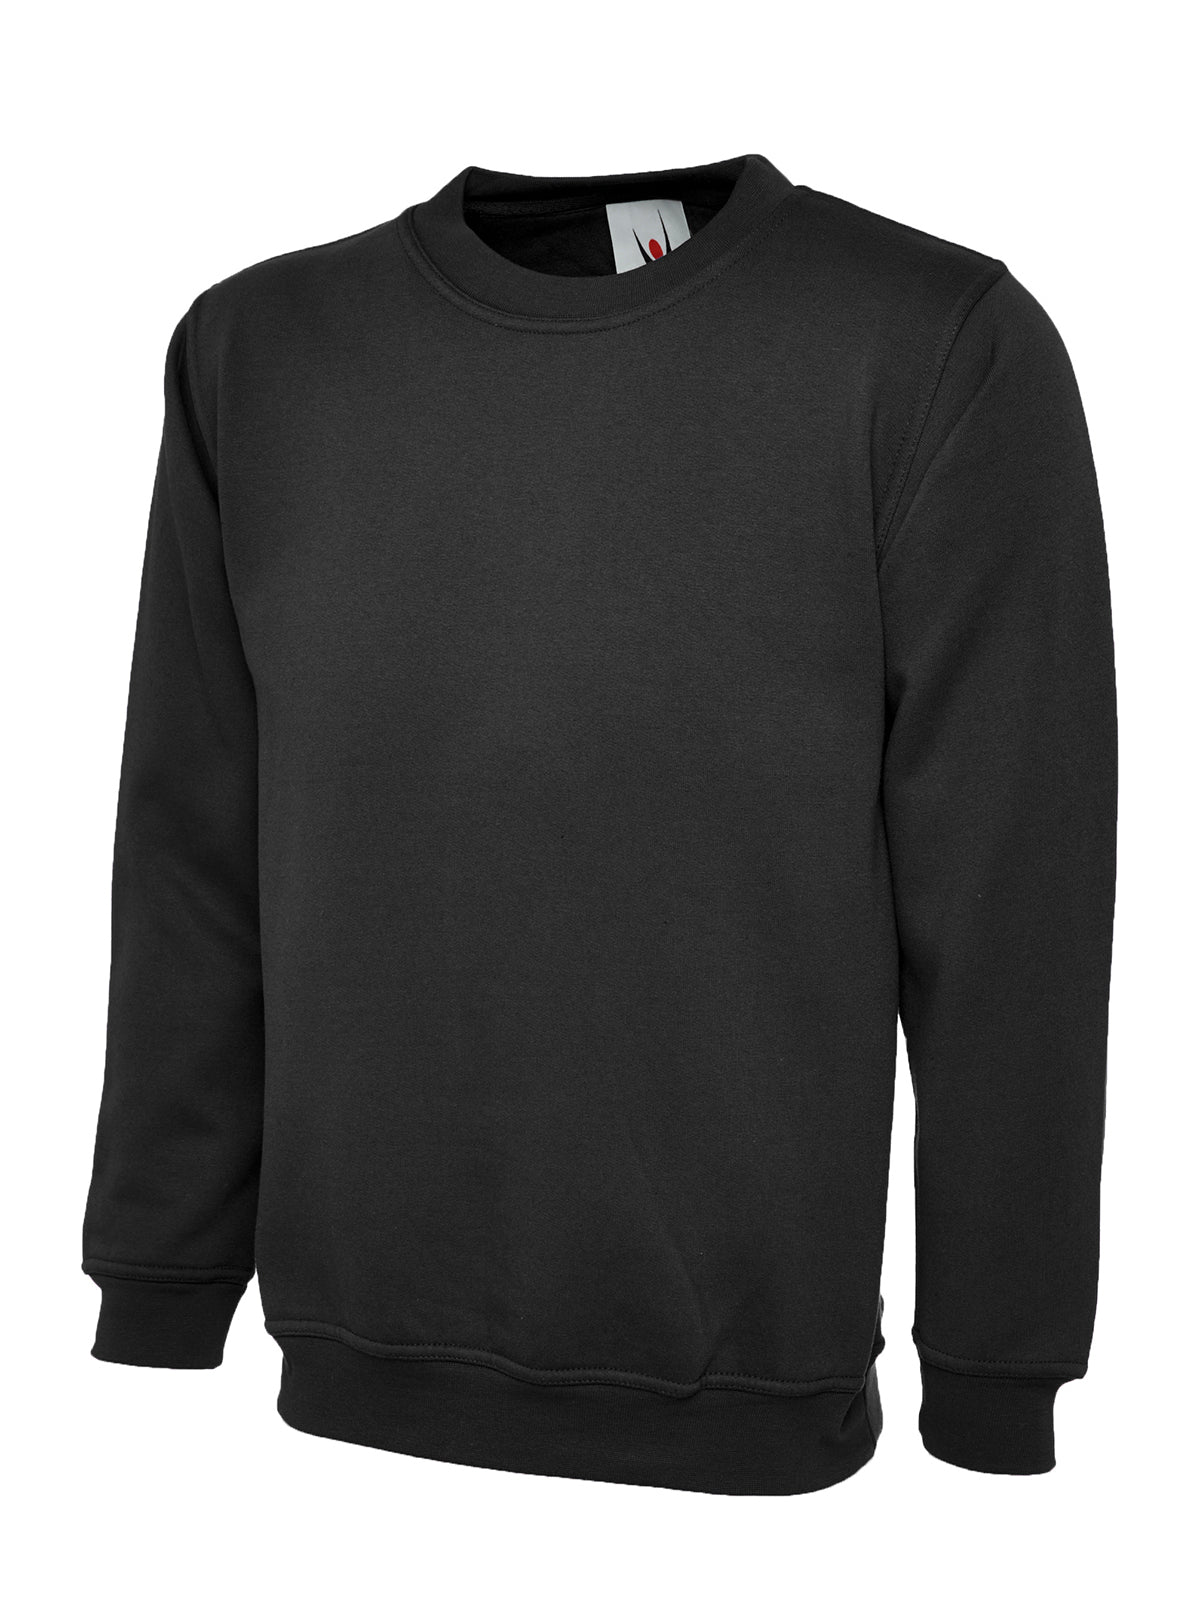 Uneek Olympic Sweatshirt UC205 - Black